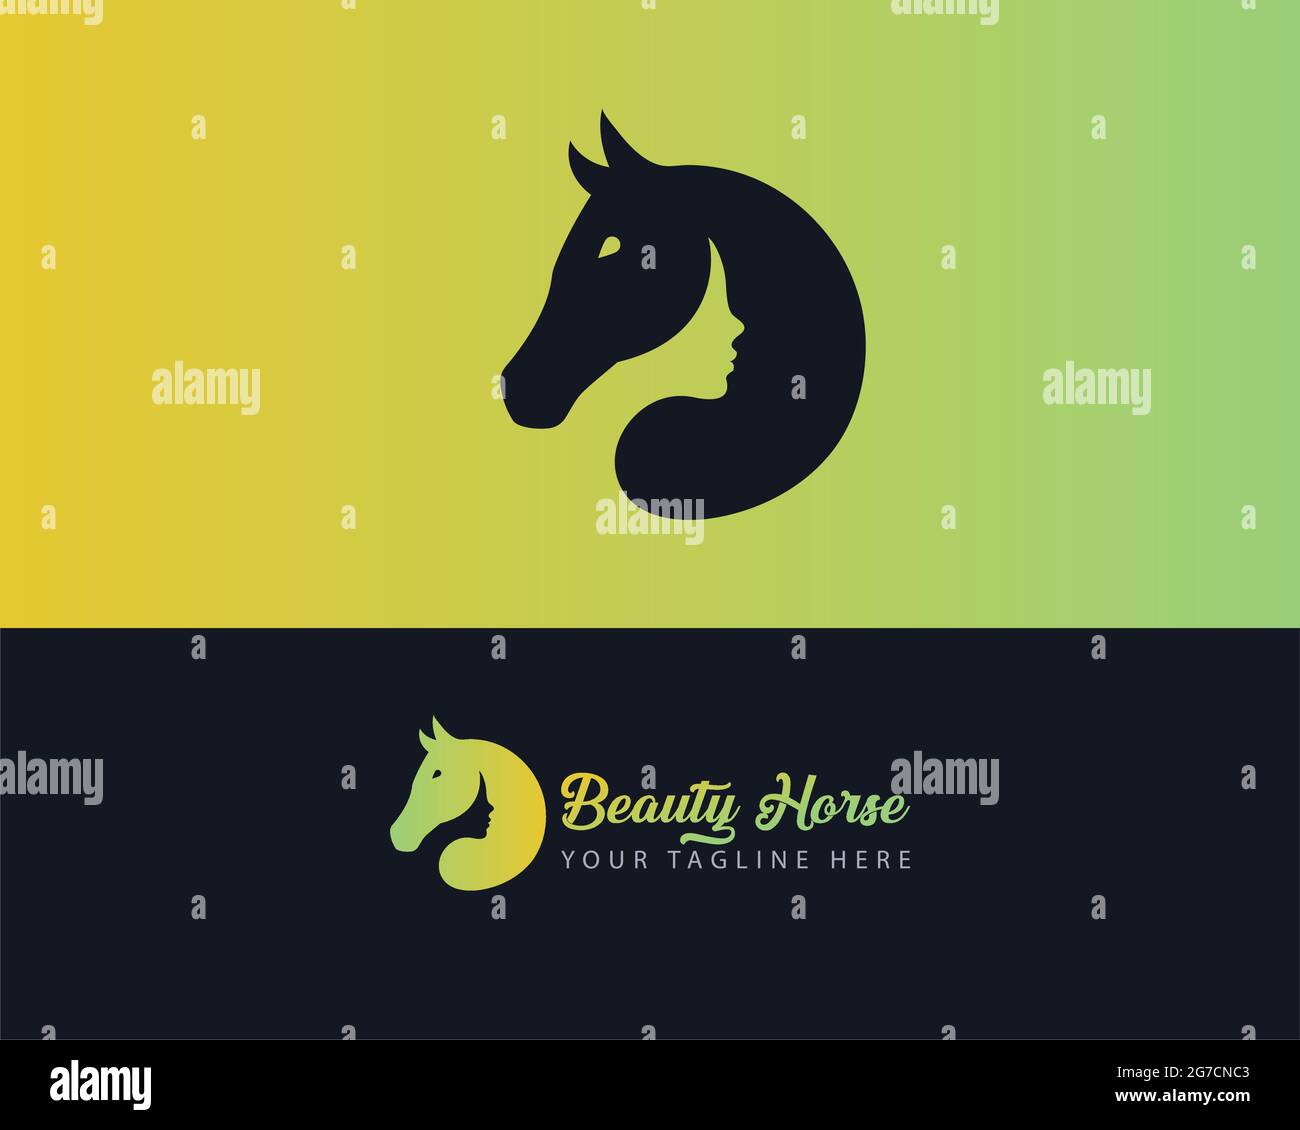 Le logo de la femme de cheval peut être utilisé comme signe, icône ou symbole, pleine couche de vecteur et facile à éditer et personnaliser la taille et la couleur, compatible avec presque Illustration de Vecteur